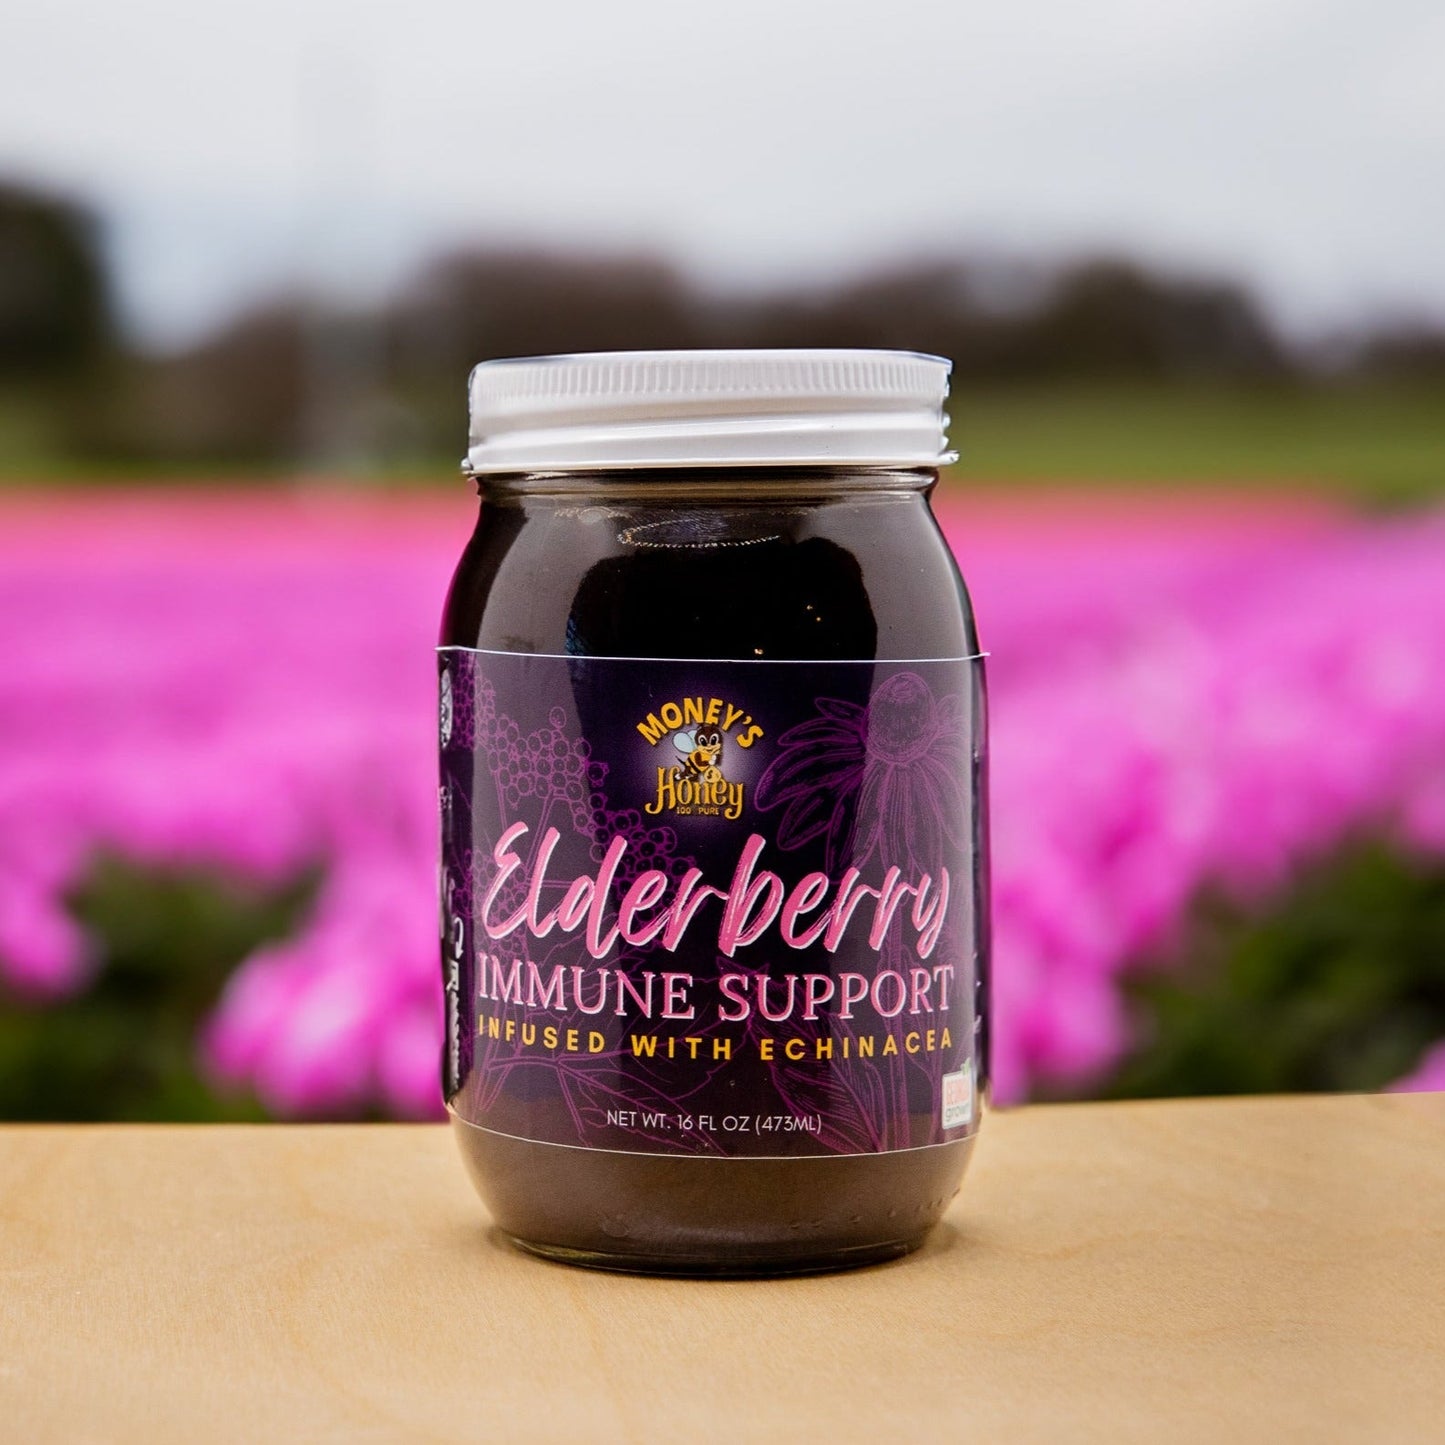 Elderberry Immune Support - Money's Honey